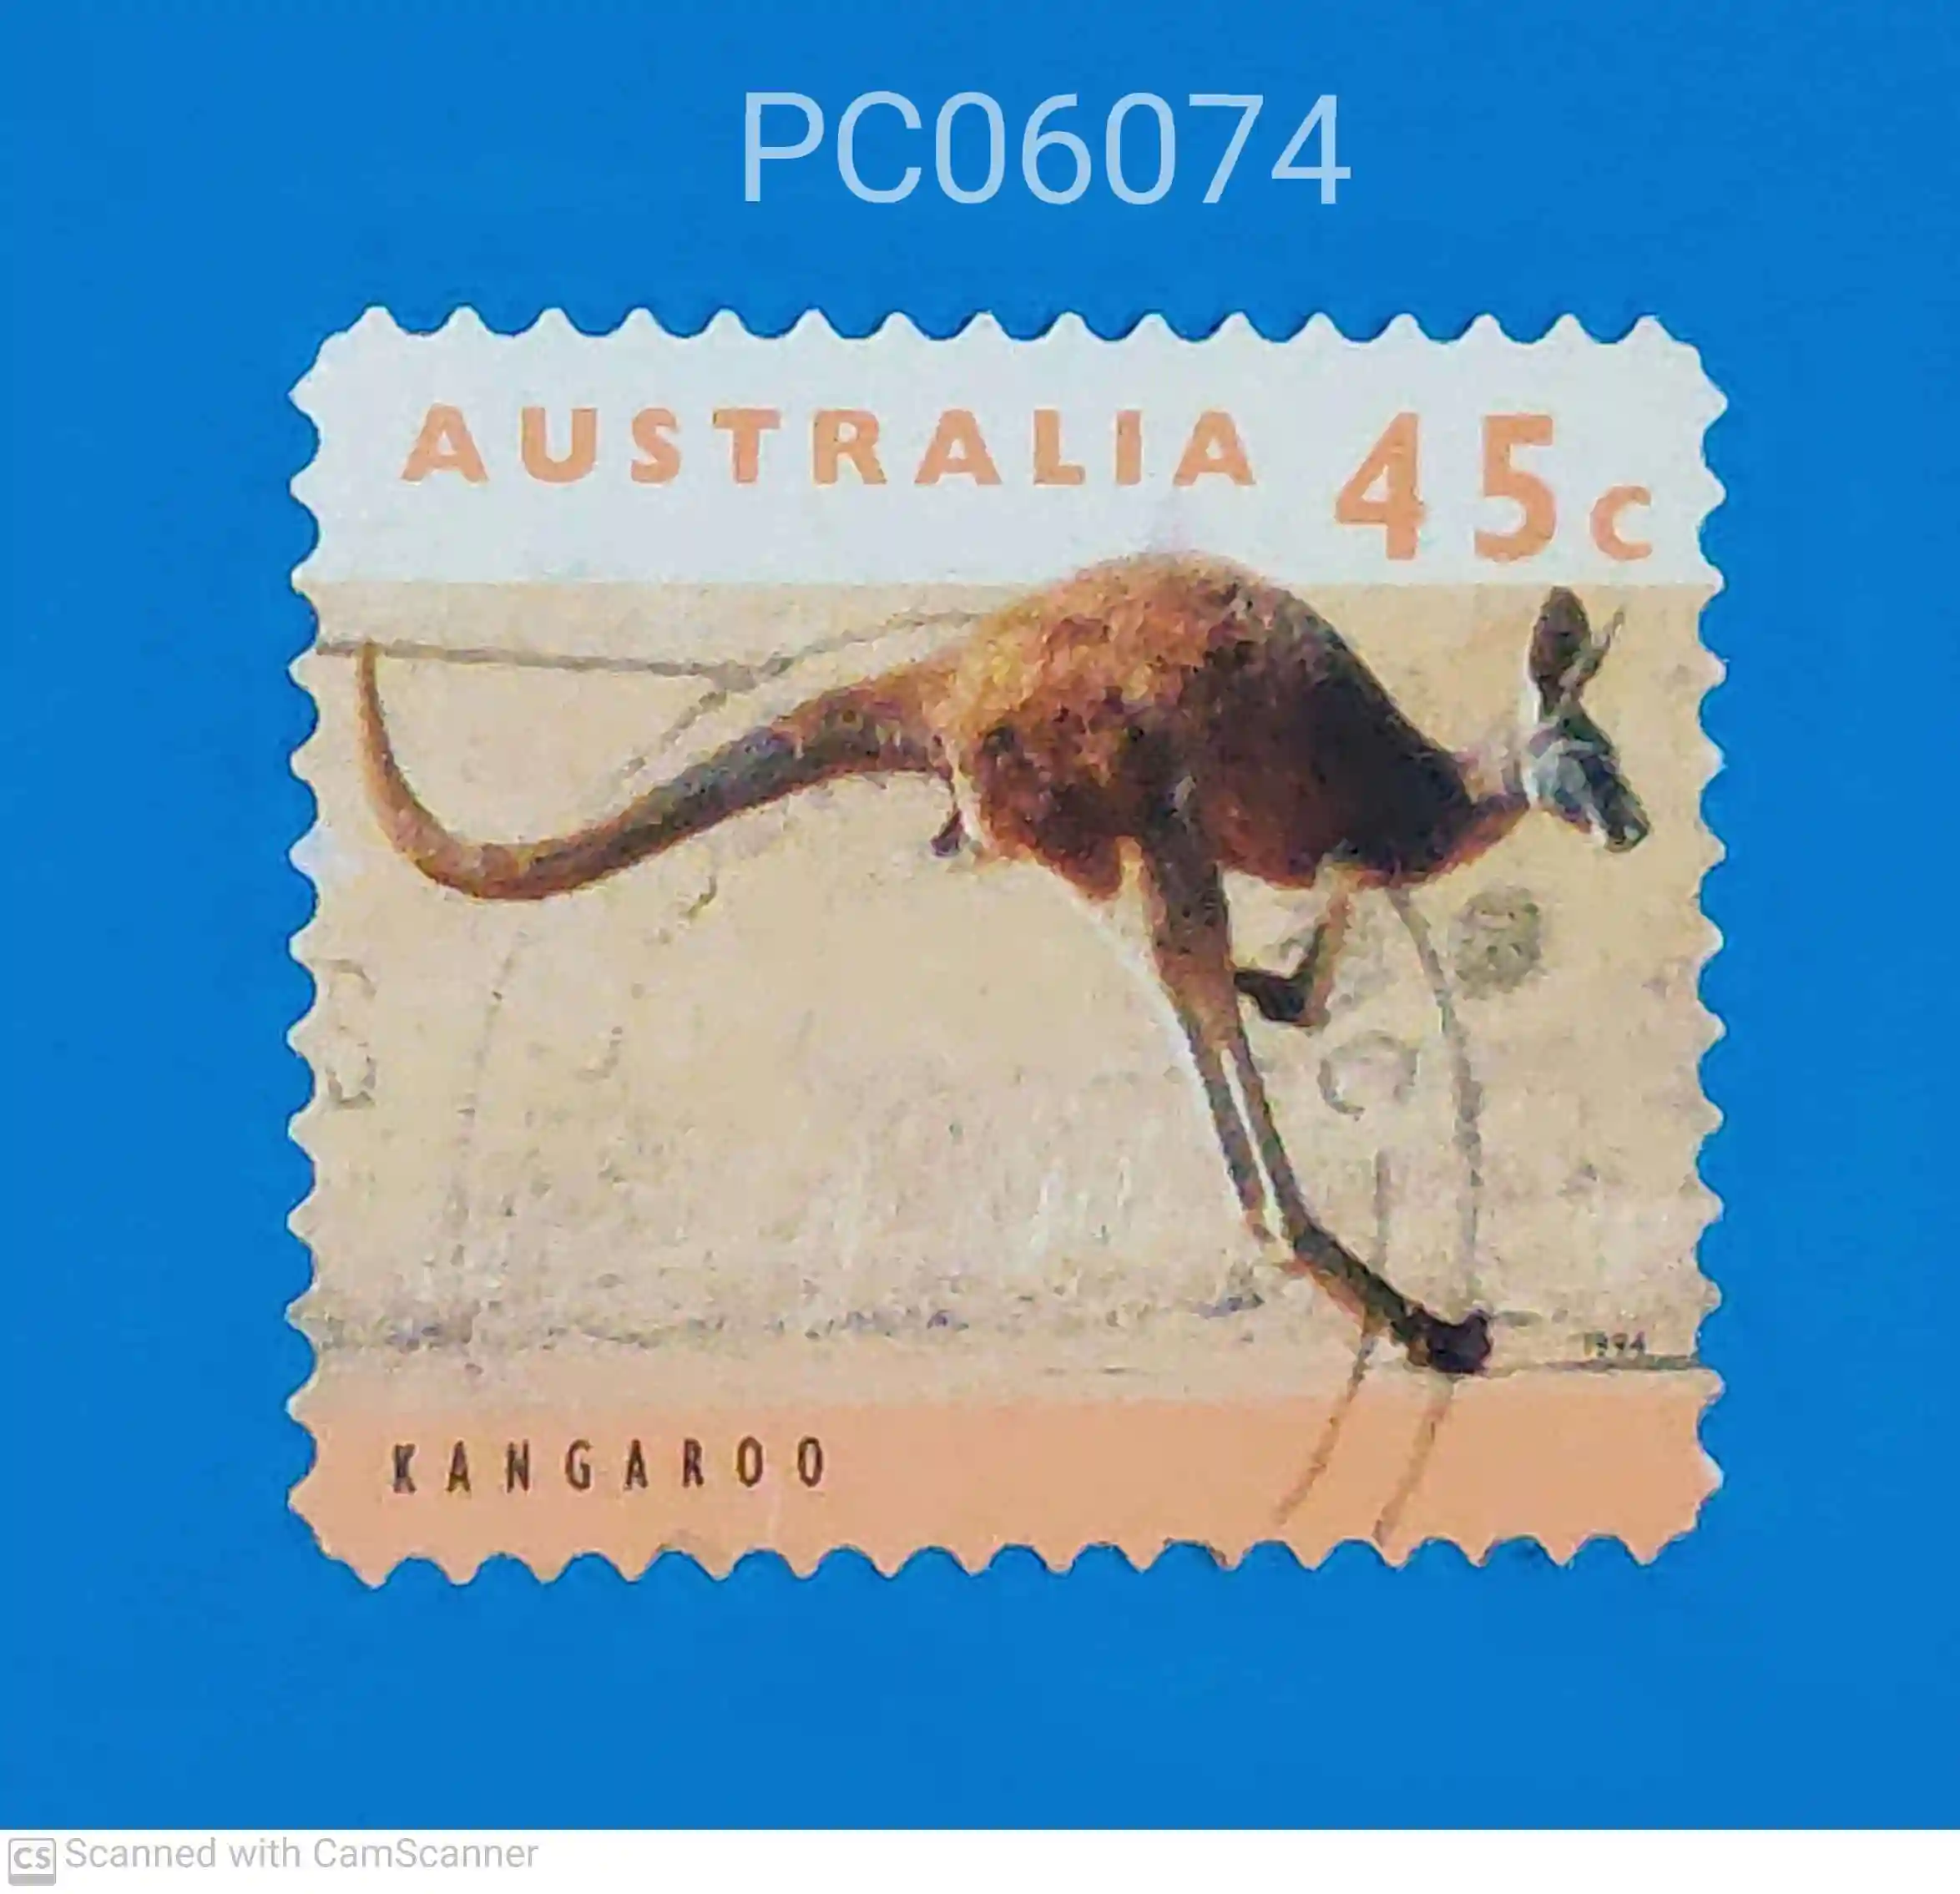 Australia Red Kangaroo Macropus rufus Used PC06074